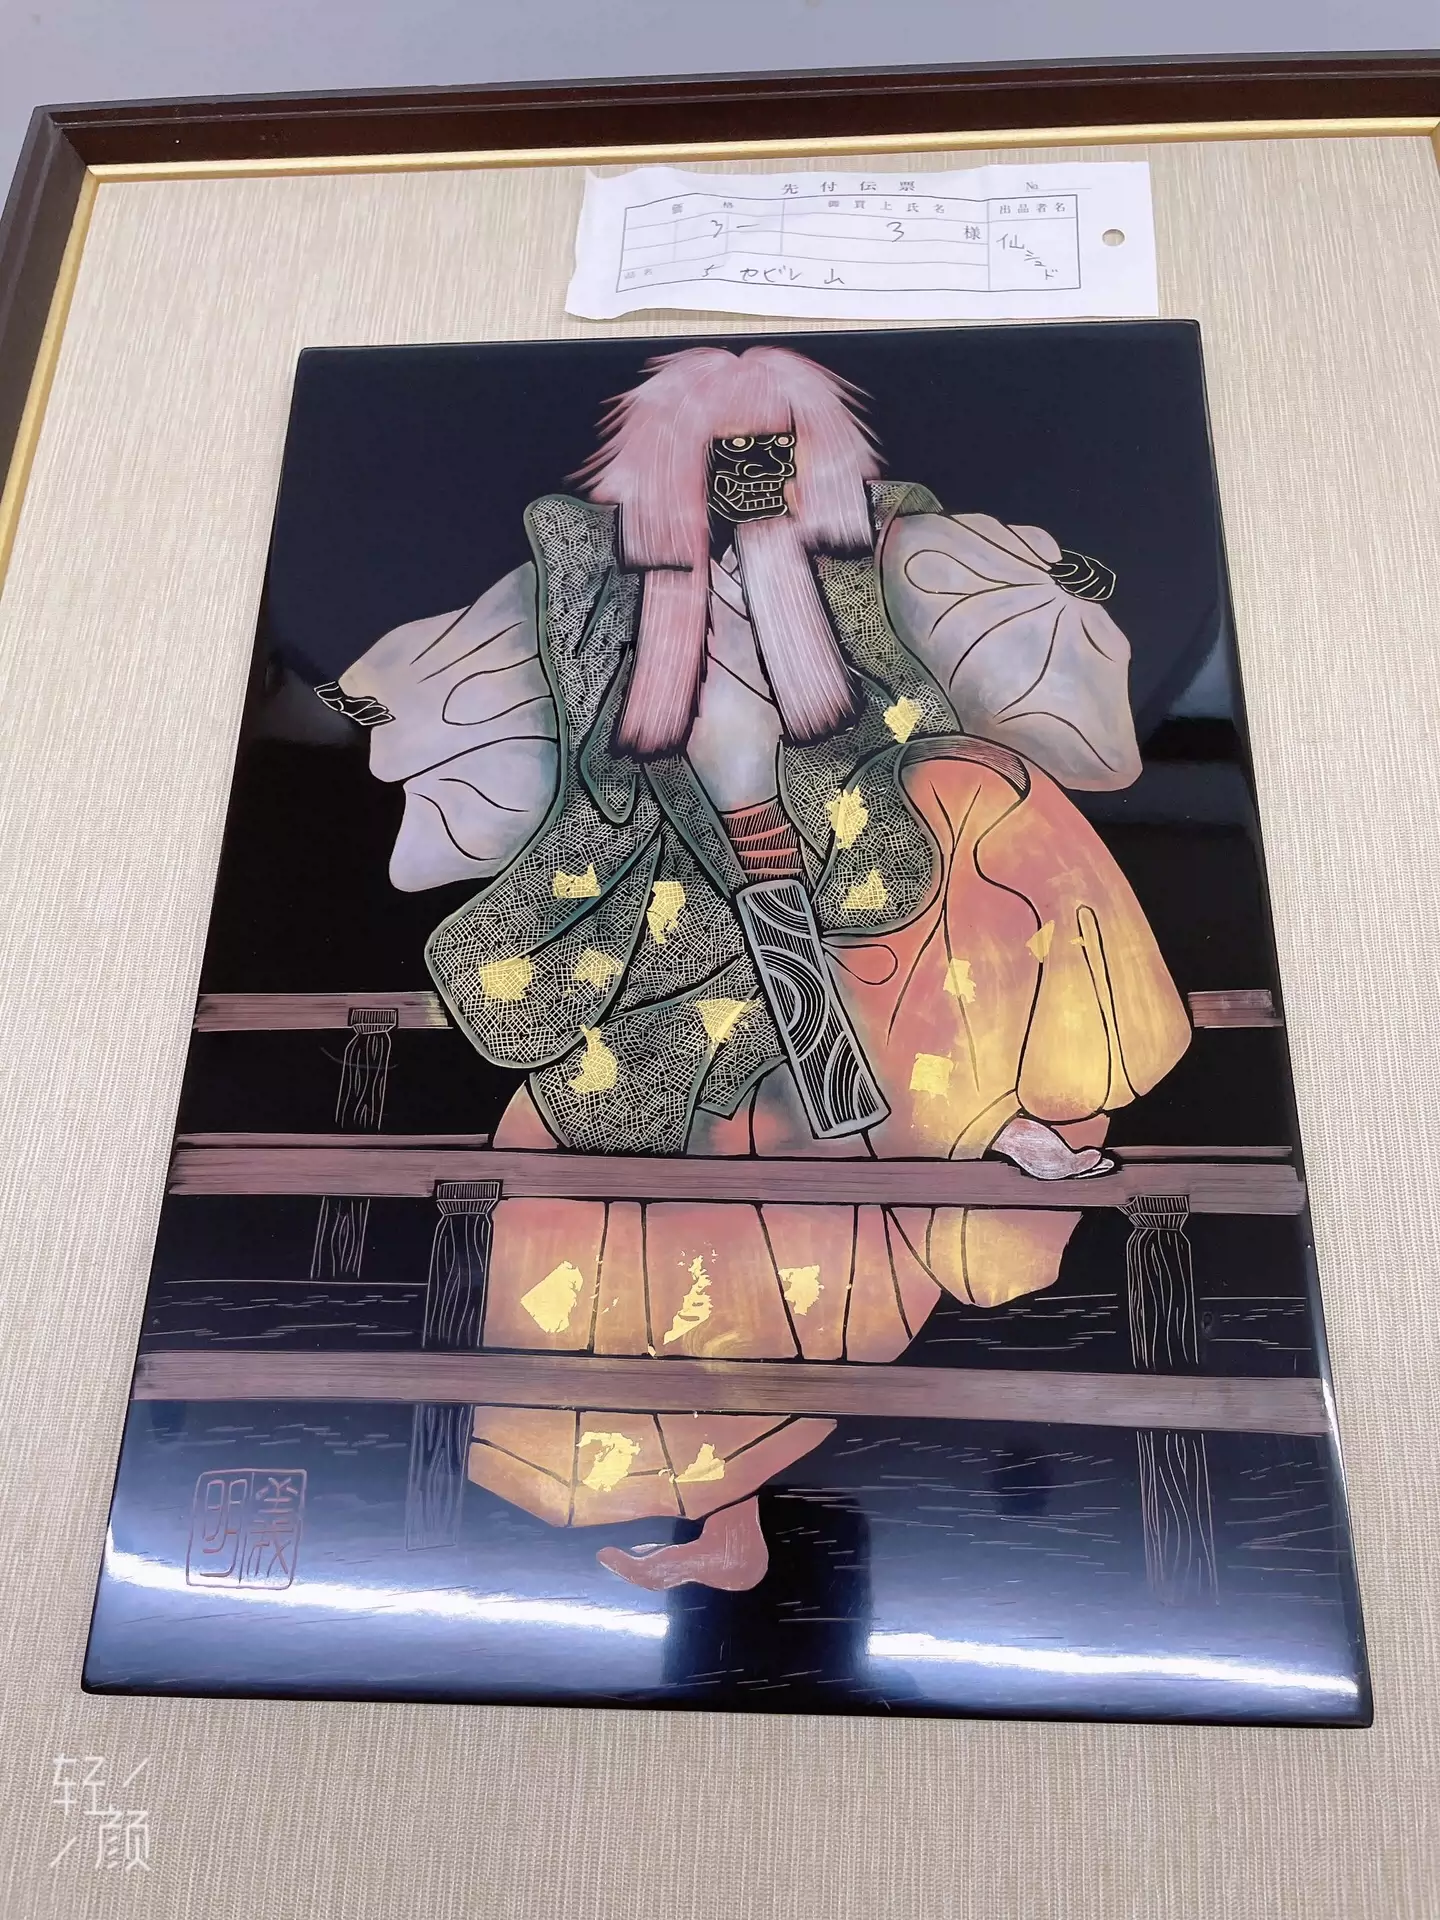 水谷昇雅「 深海 の ランデブー 」 銅版画 エッチング ドライポイント 木版画 抽象画 - 美術品